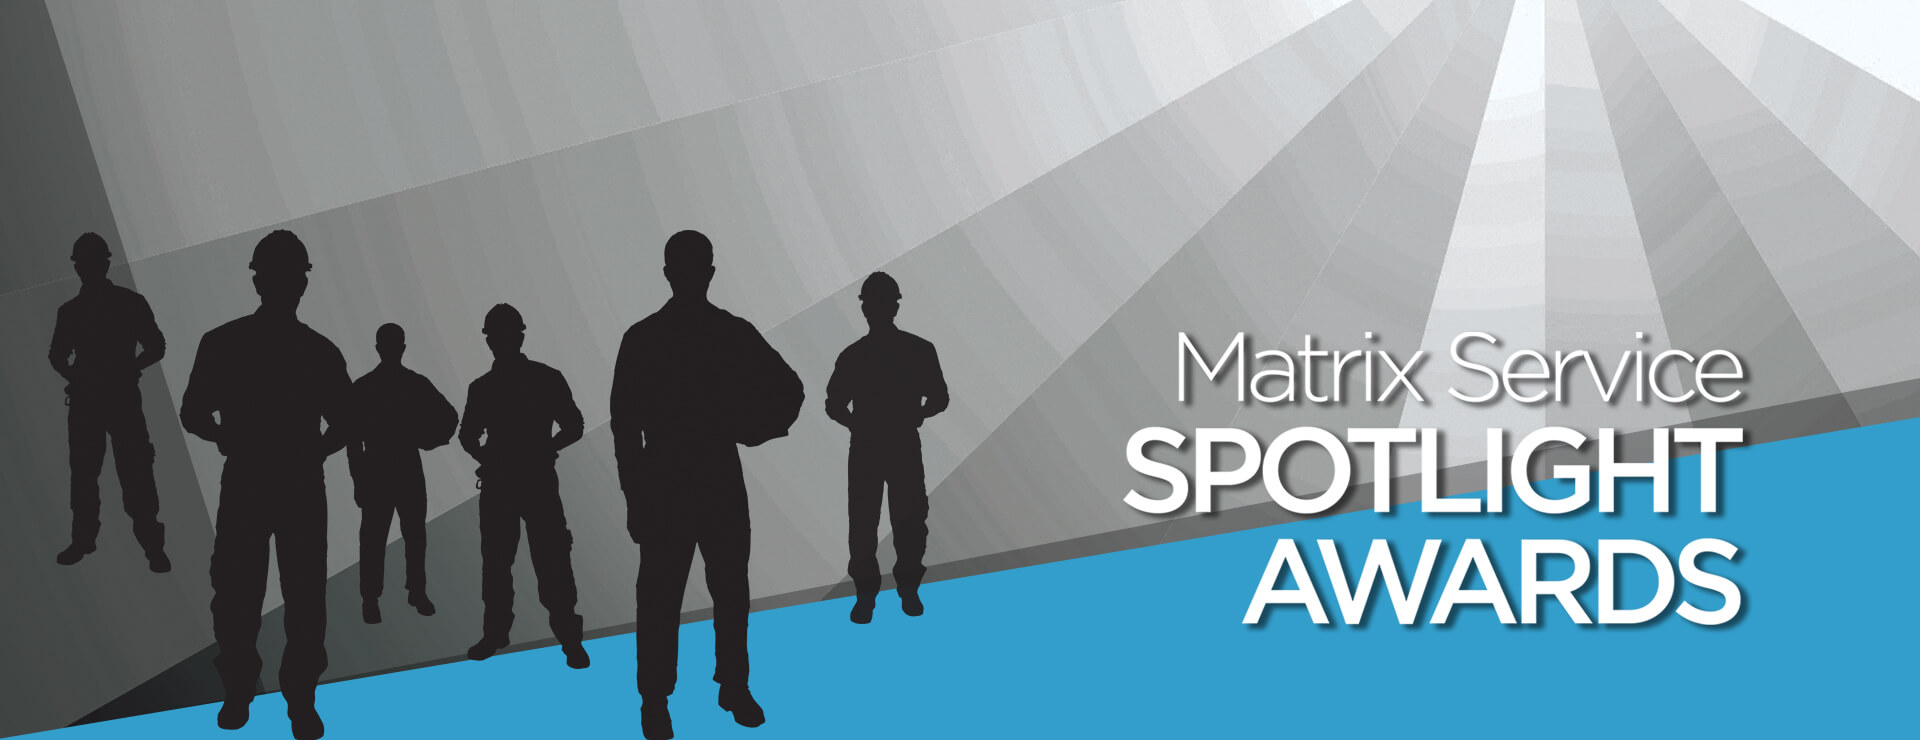 Matrix Service Spotlight Awards